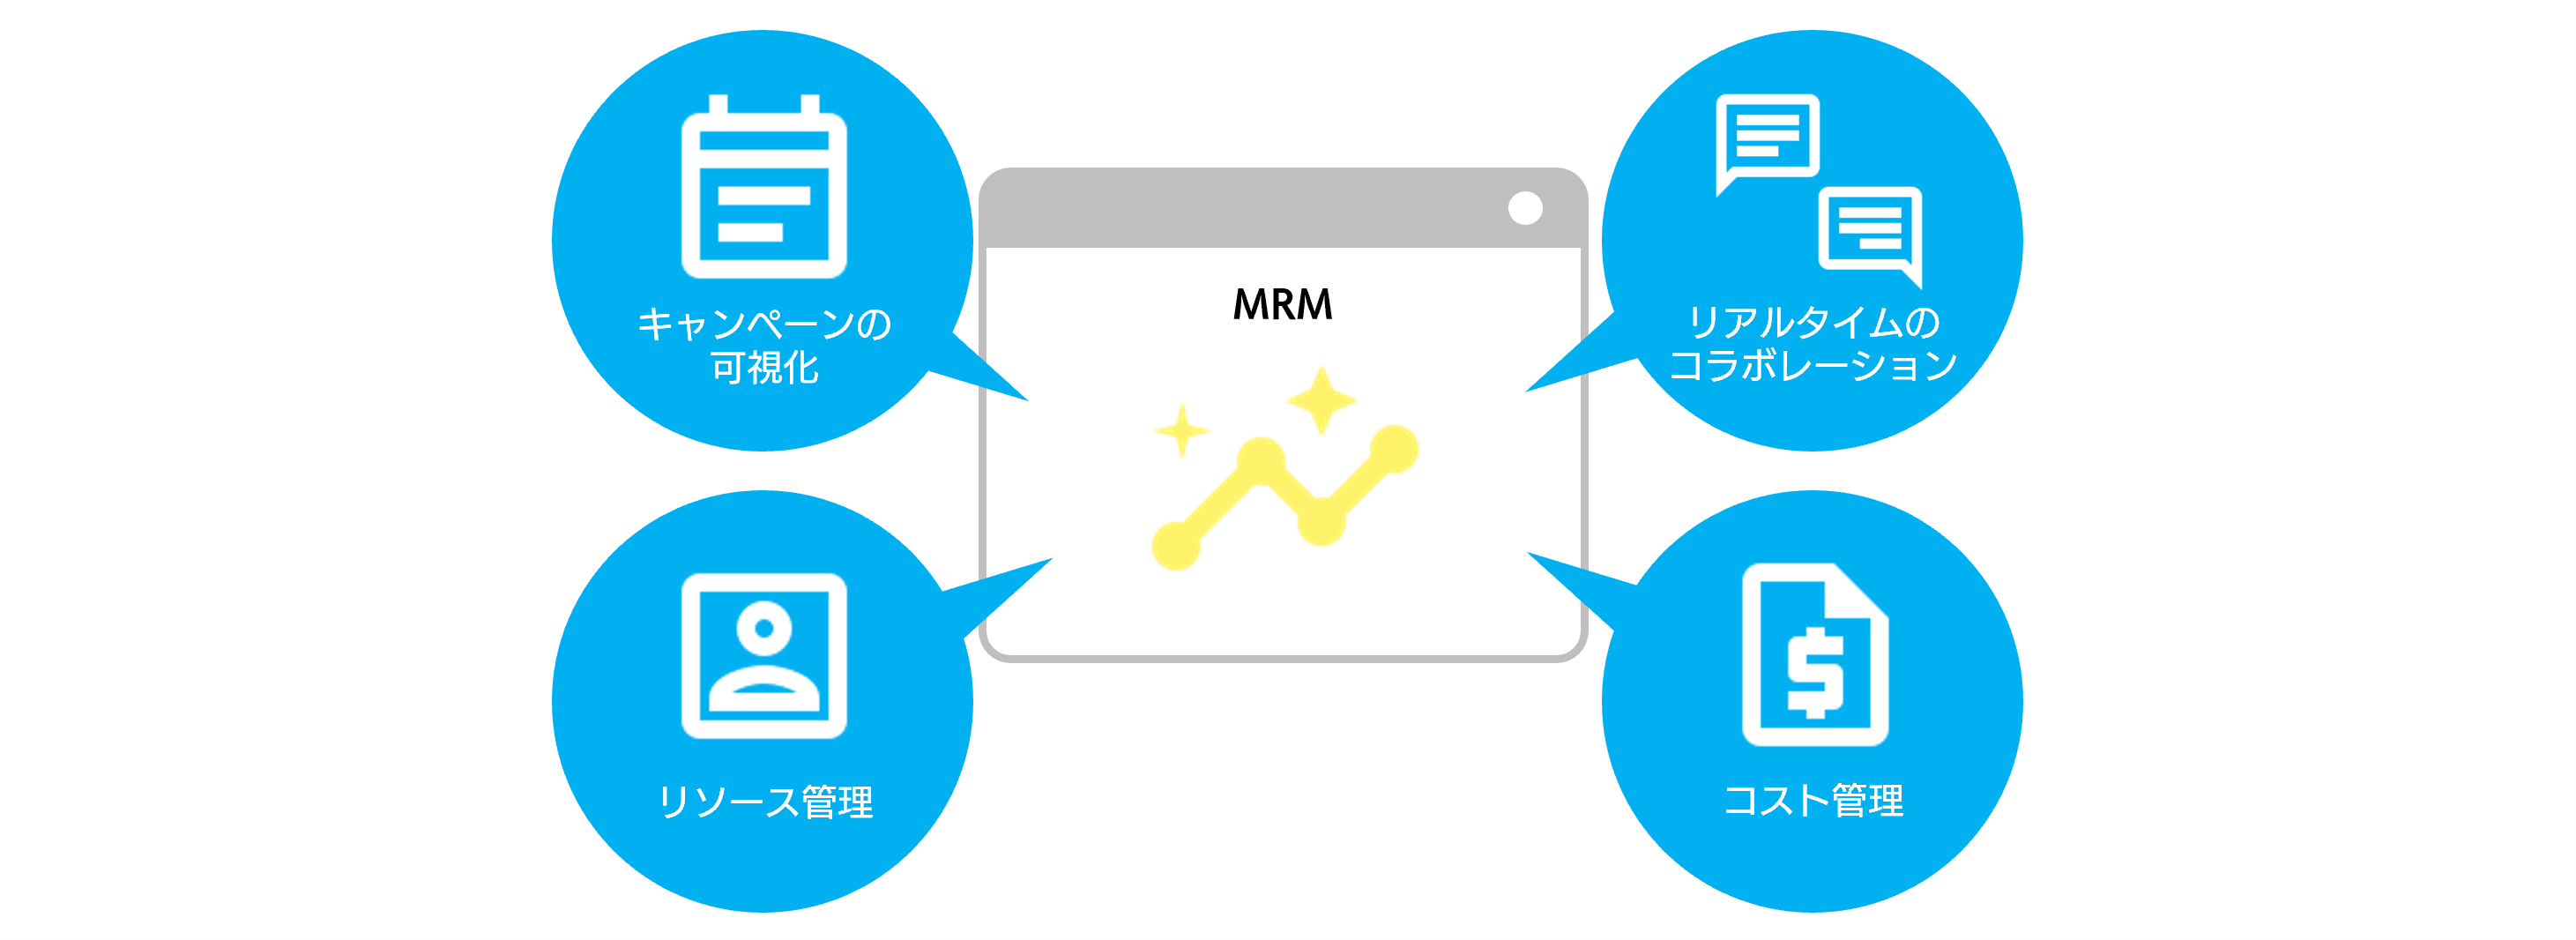 マーケティング施策を管理、迅速に実行する「Marketing Resource Management (MRM)」